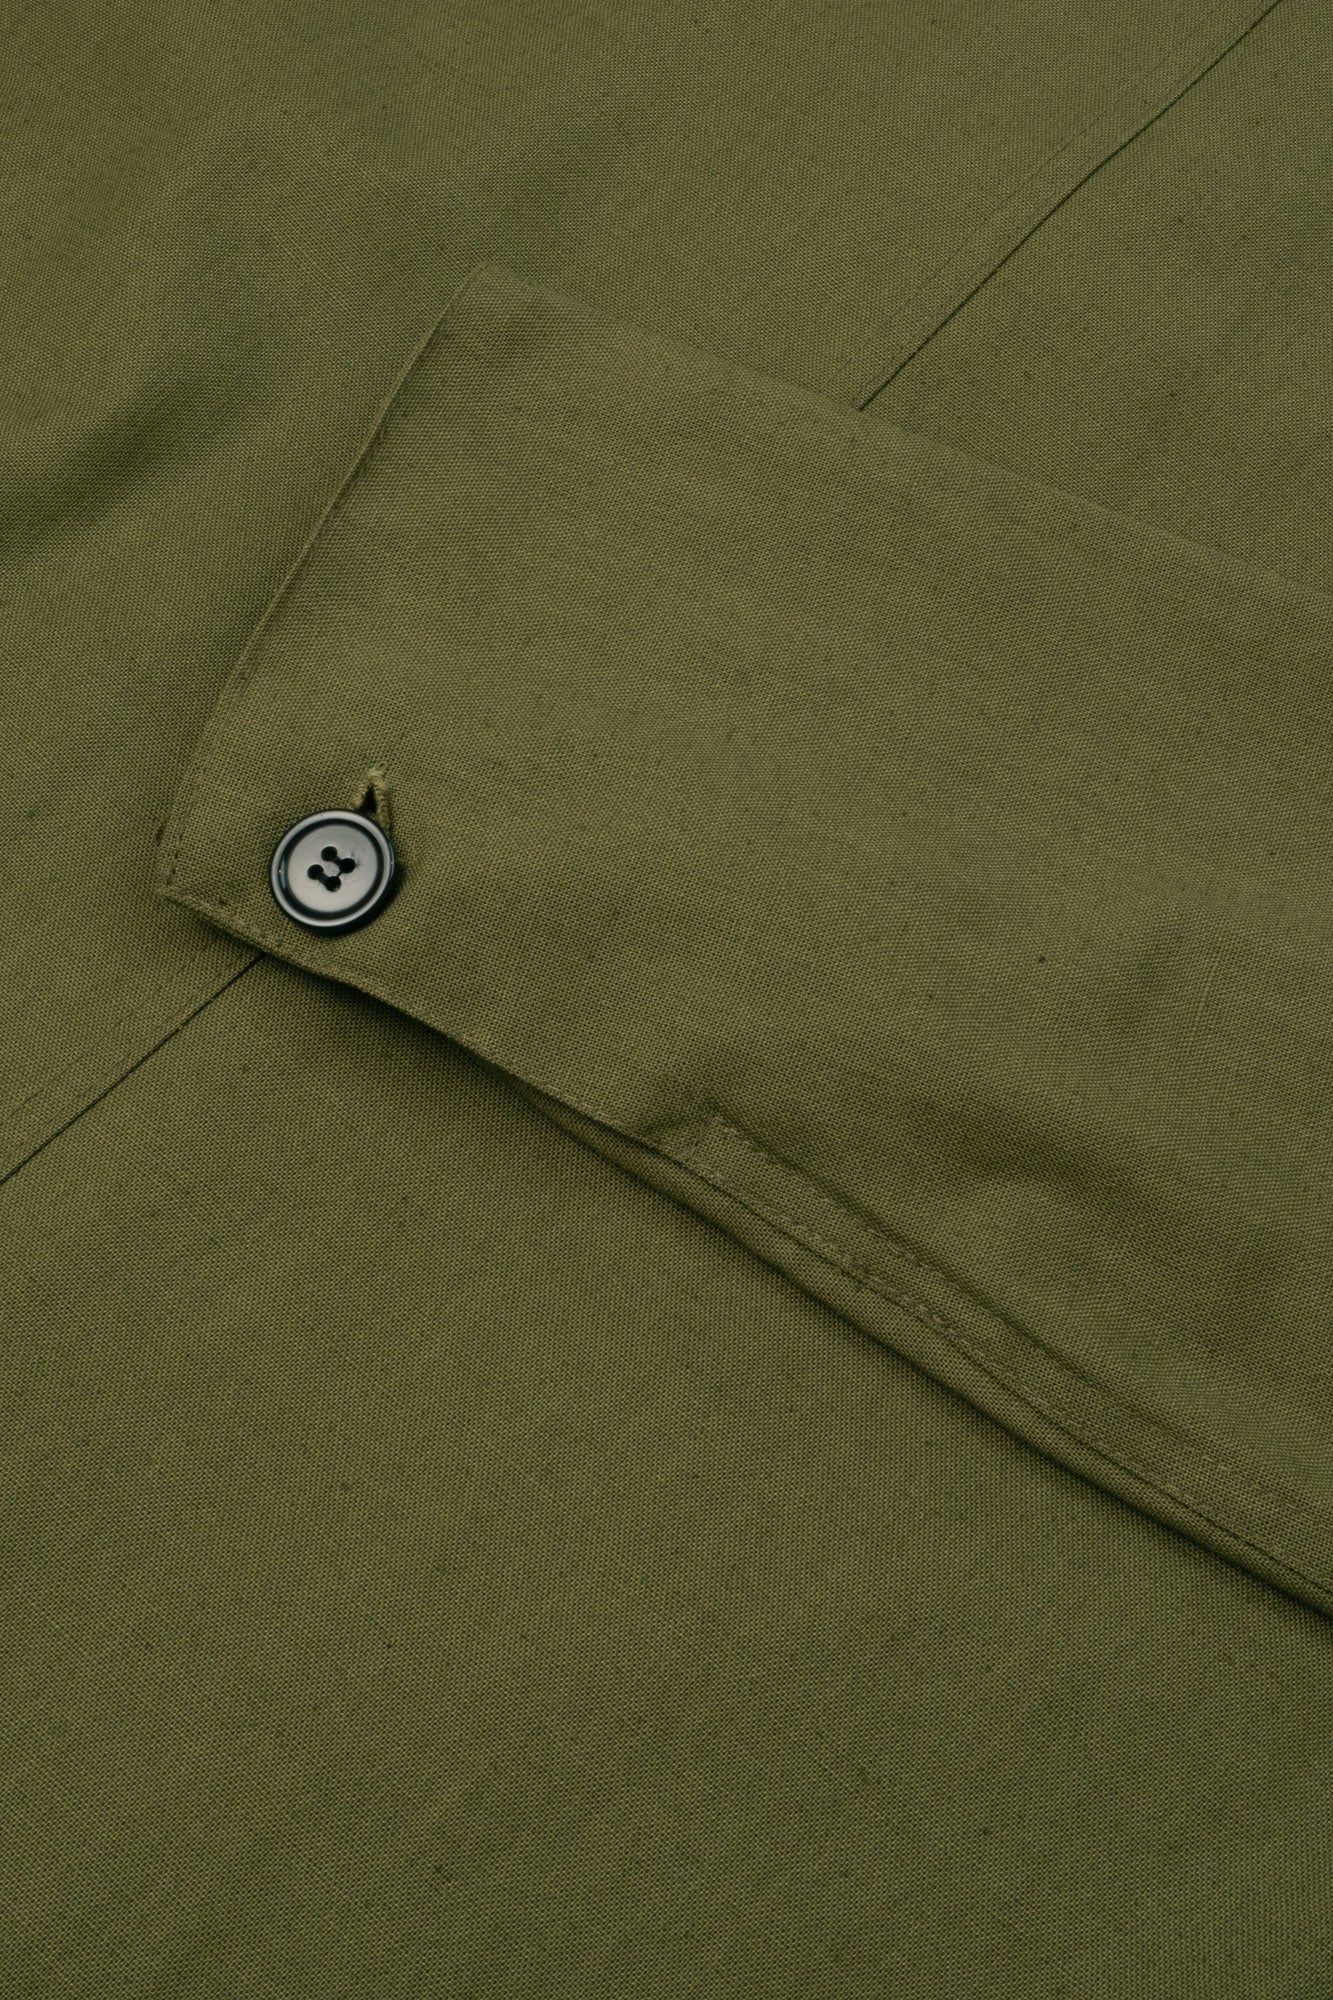 canvas linen zip jacket olive